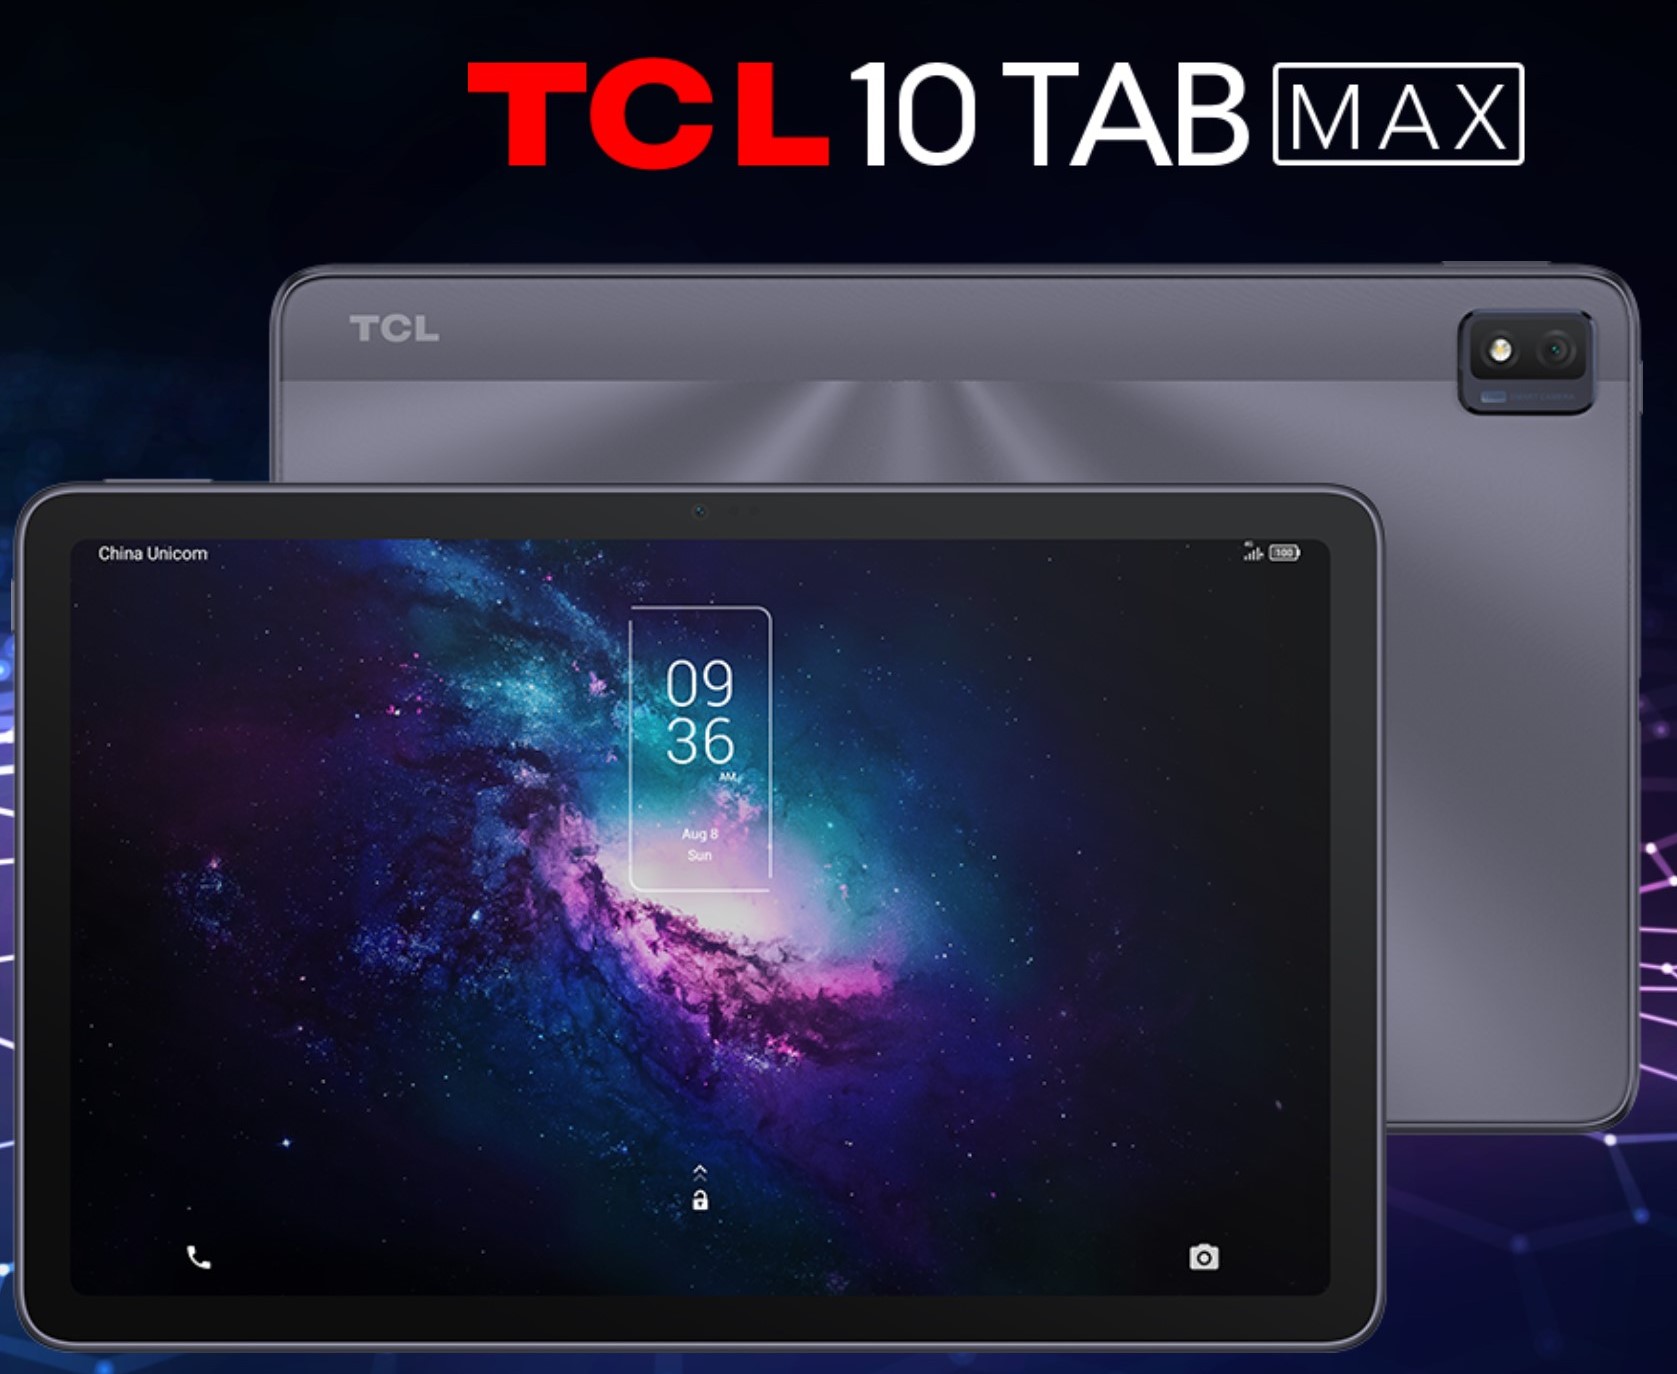 Tablet TCL Tab 7L 4G